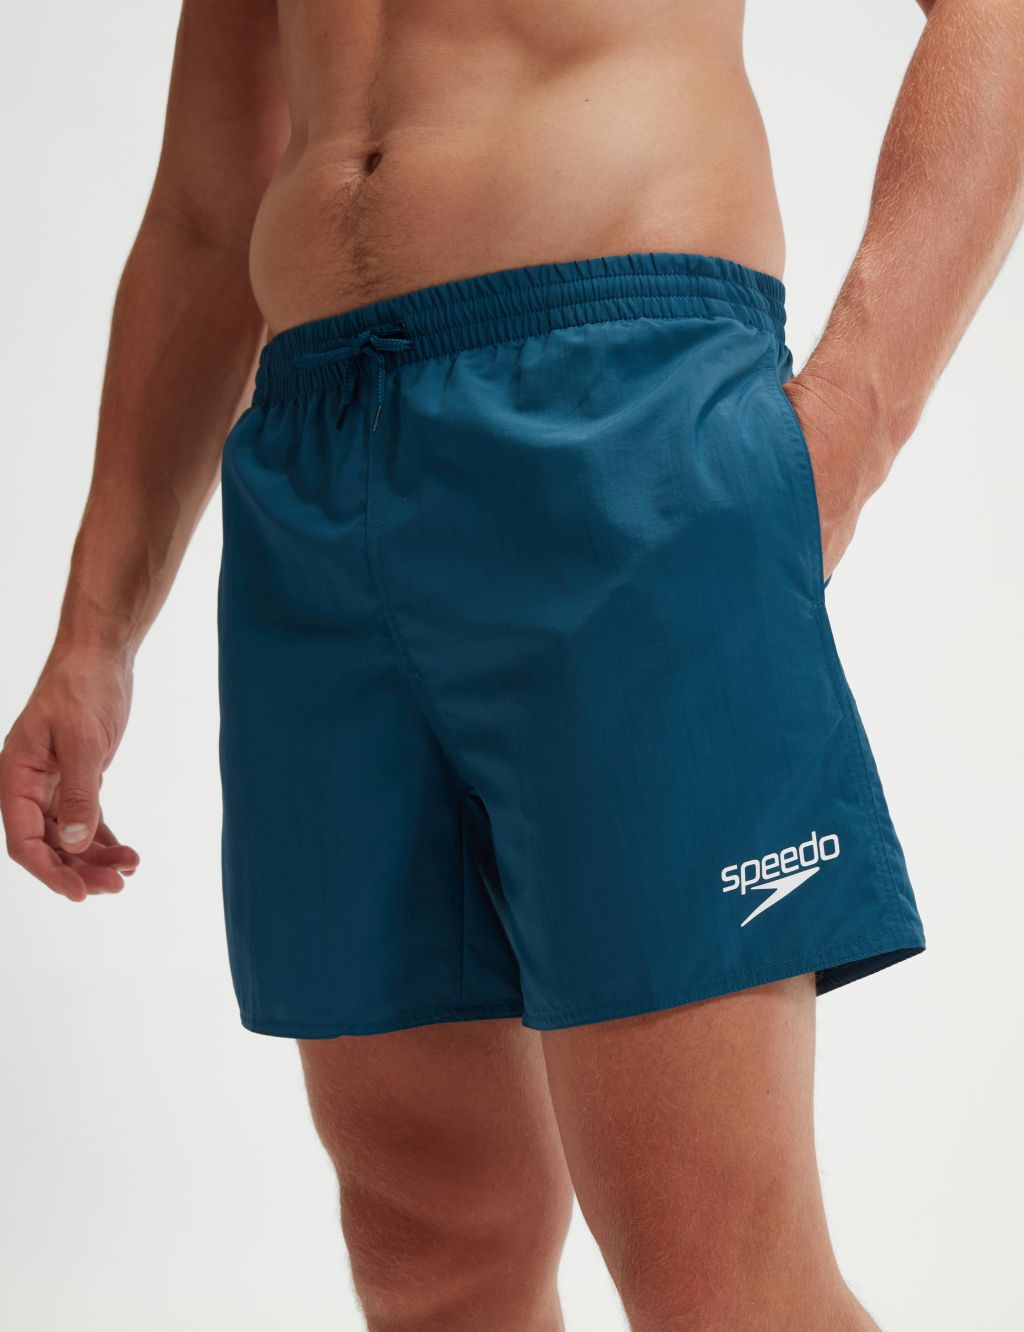 Pocketed Swim Shorts image 4